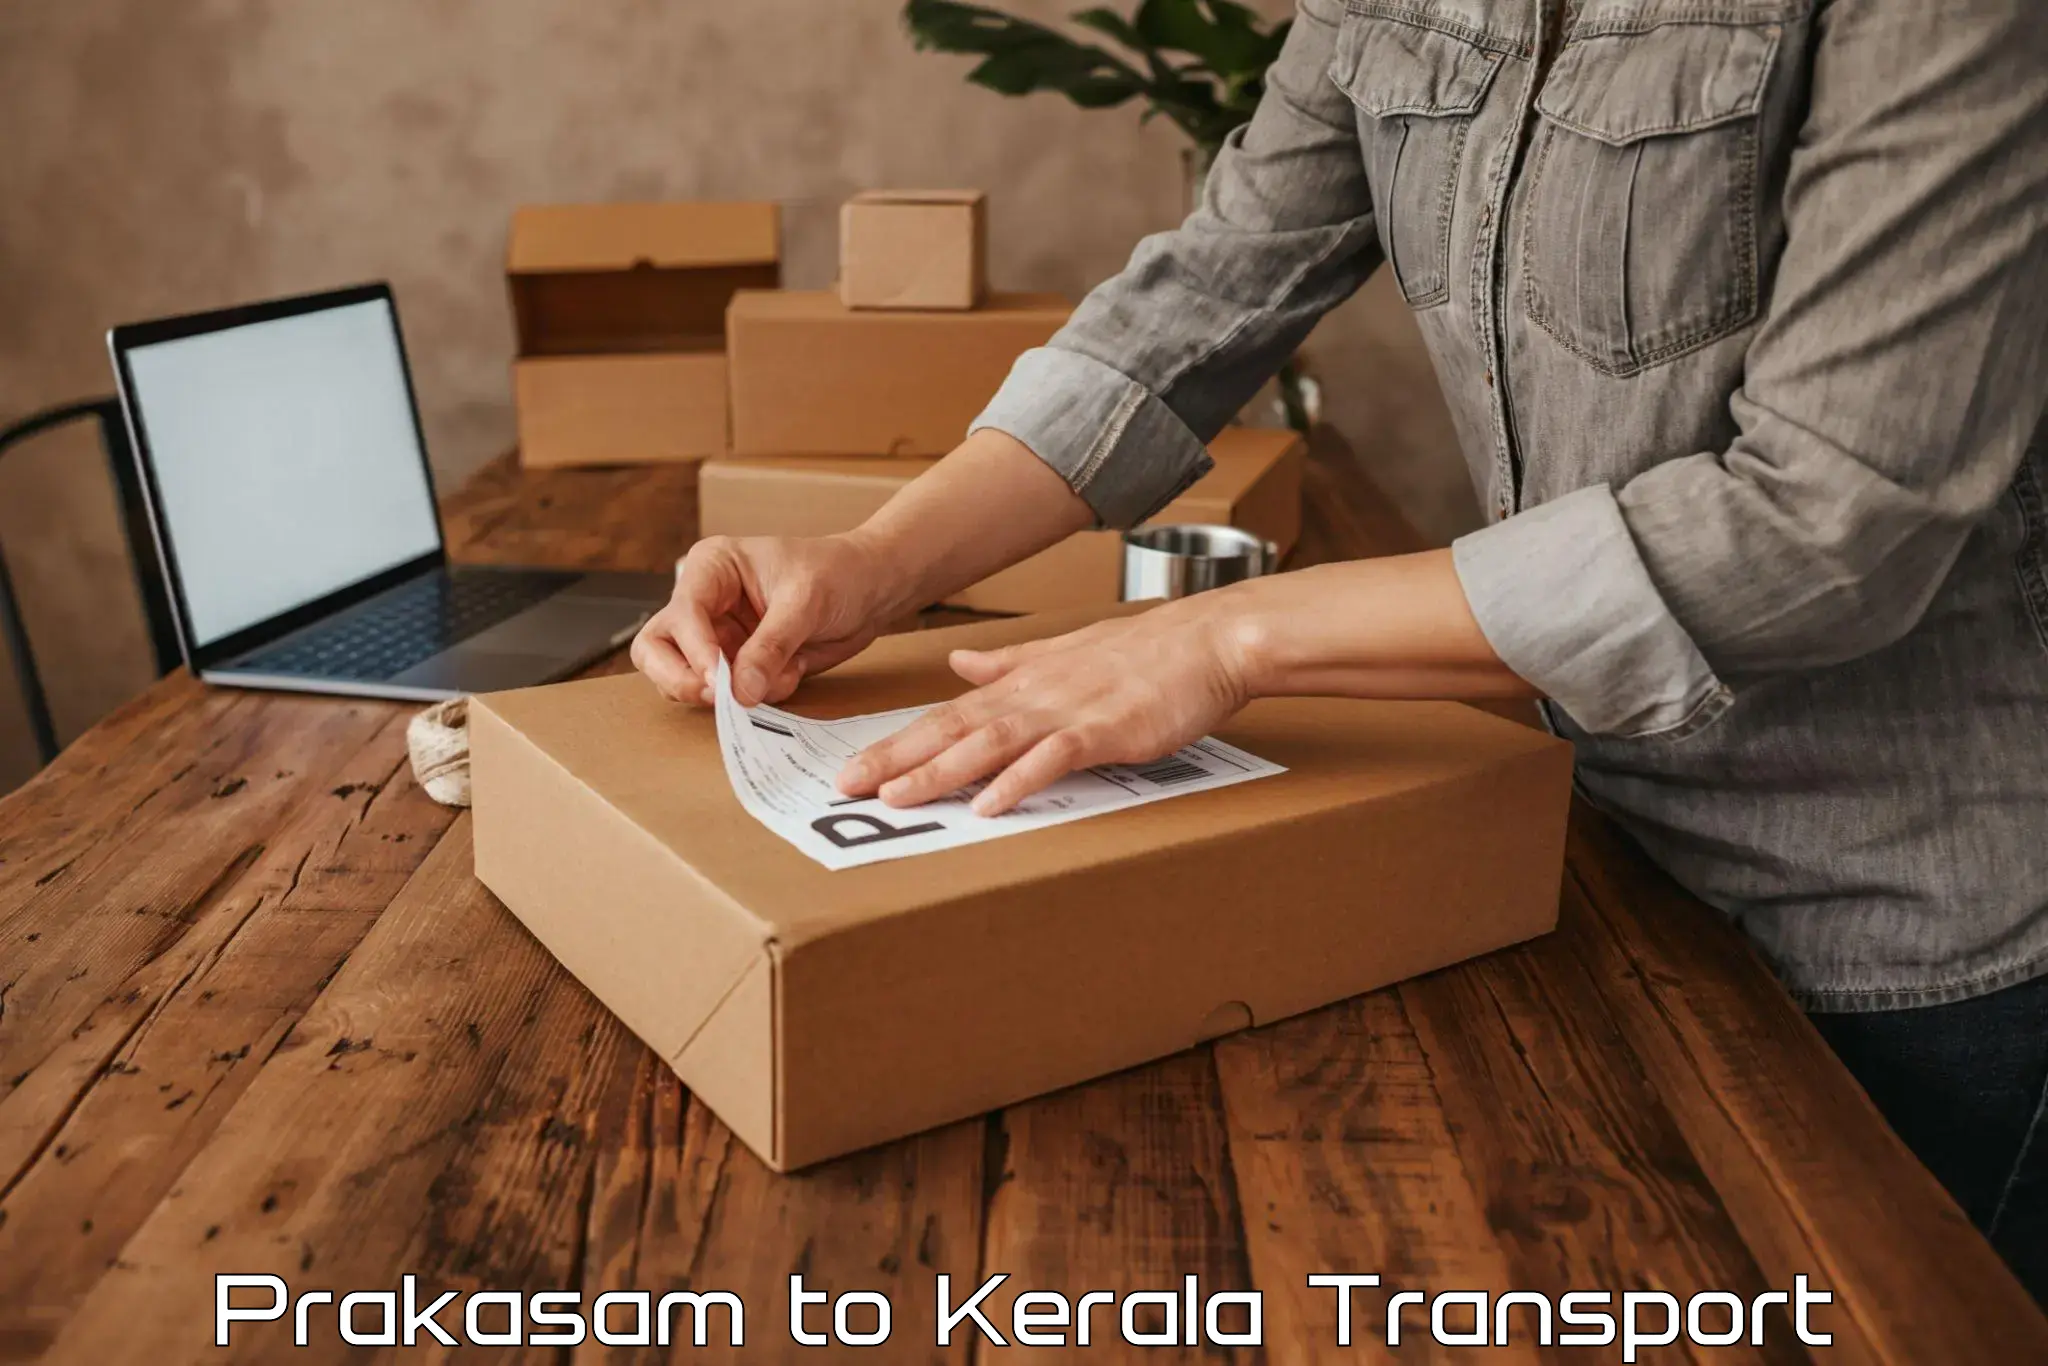 Vehicle parcel service Prakasam to Kuthuparamba